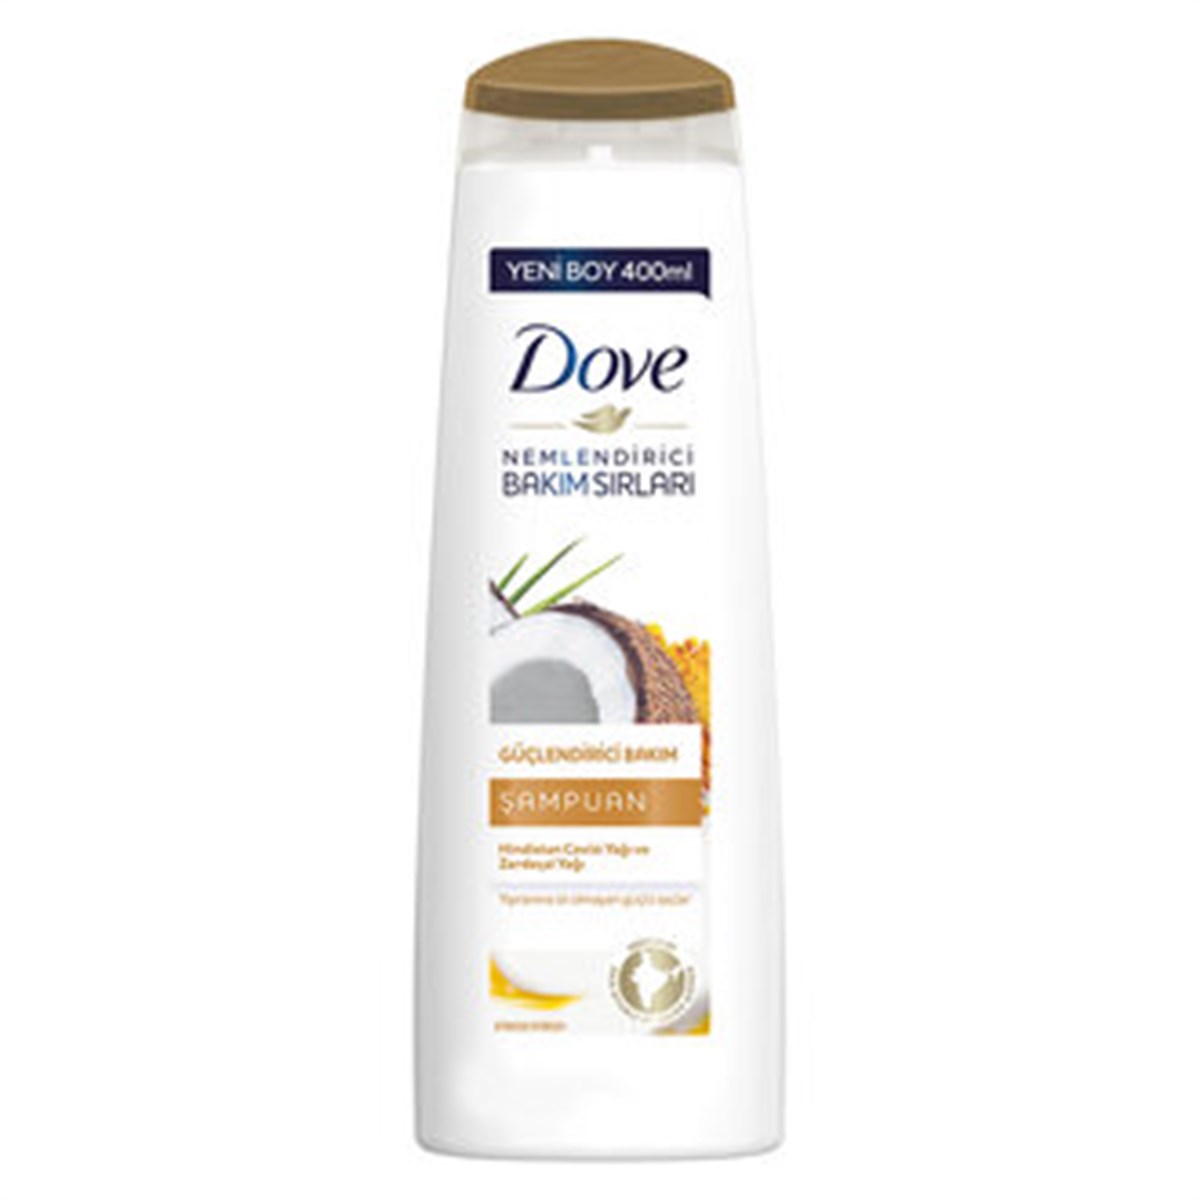 Dove Şampuan Güçlendirici Bakım 400ml